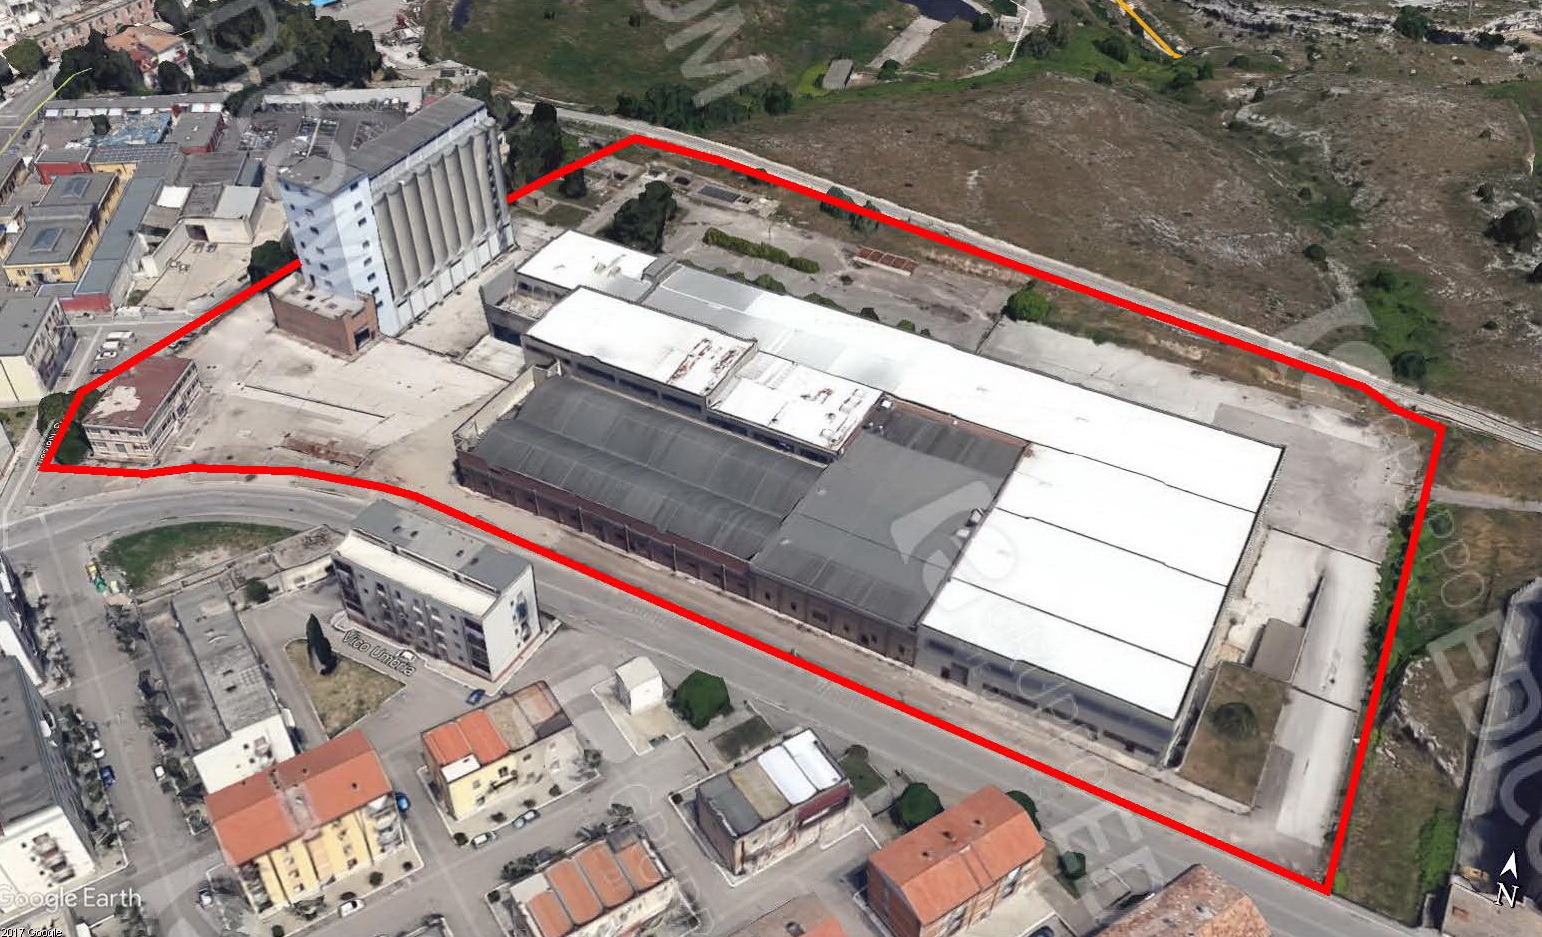 Architetti Innovativi: “Il “Progetto Bandiera” del Comune di Matera sull’area ex Barilla non ha senso se non si acquista la proprietà”